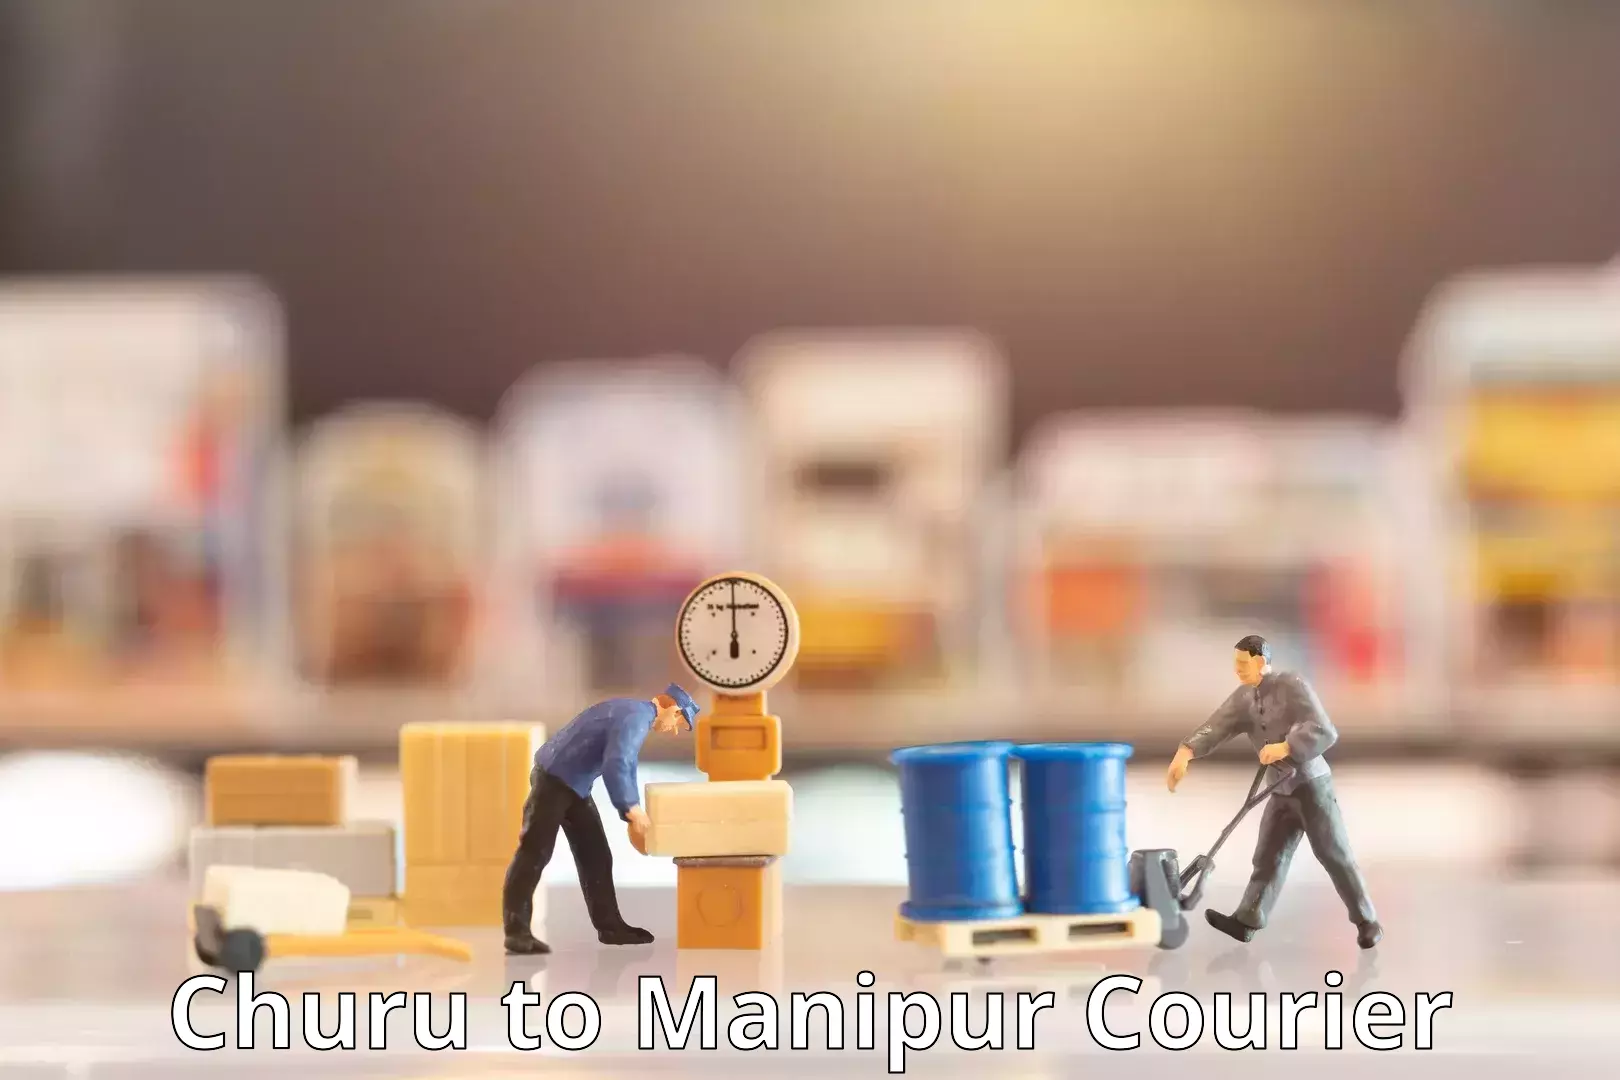 Customer-oriented courier services in Churu to Churachandpur